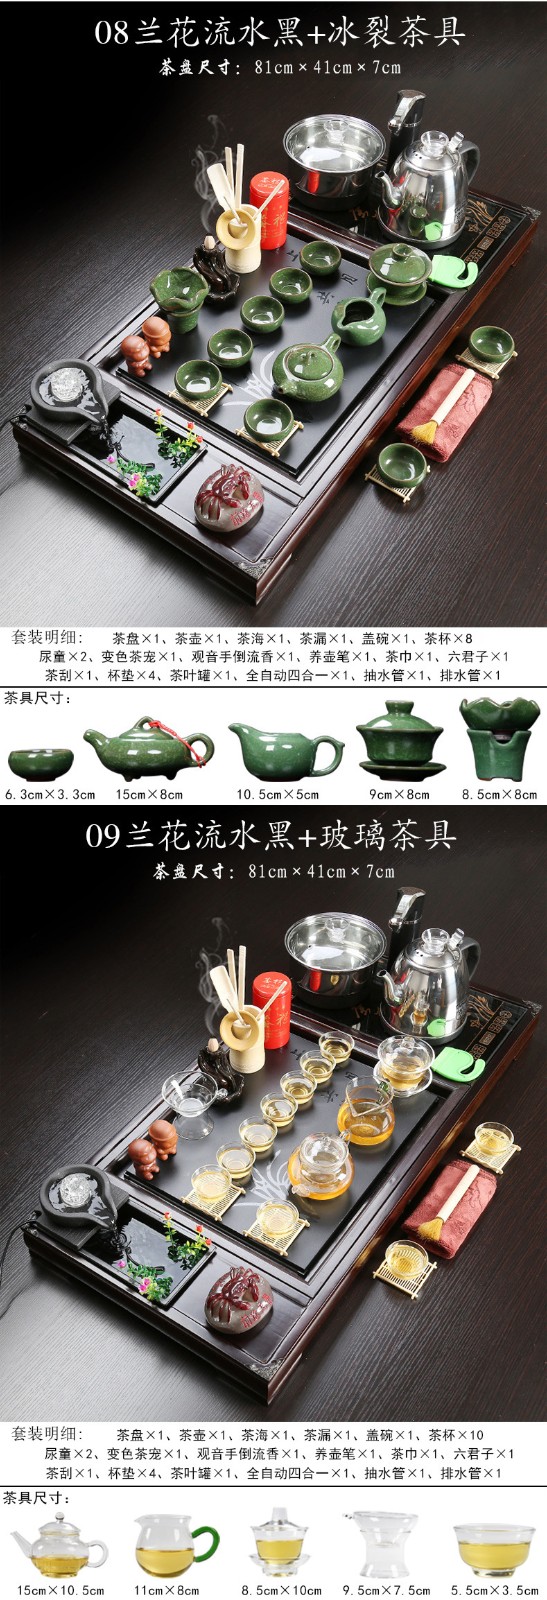 实木茶盘茶具套装兰花流水黑色茶盘+玻璃茶具+黑色全自动电器